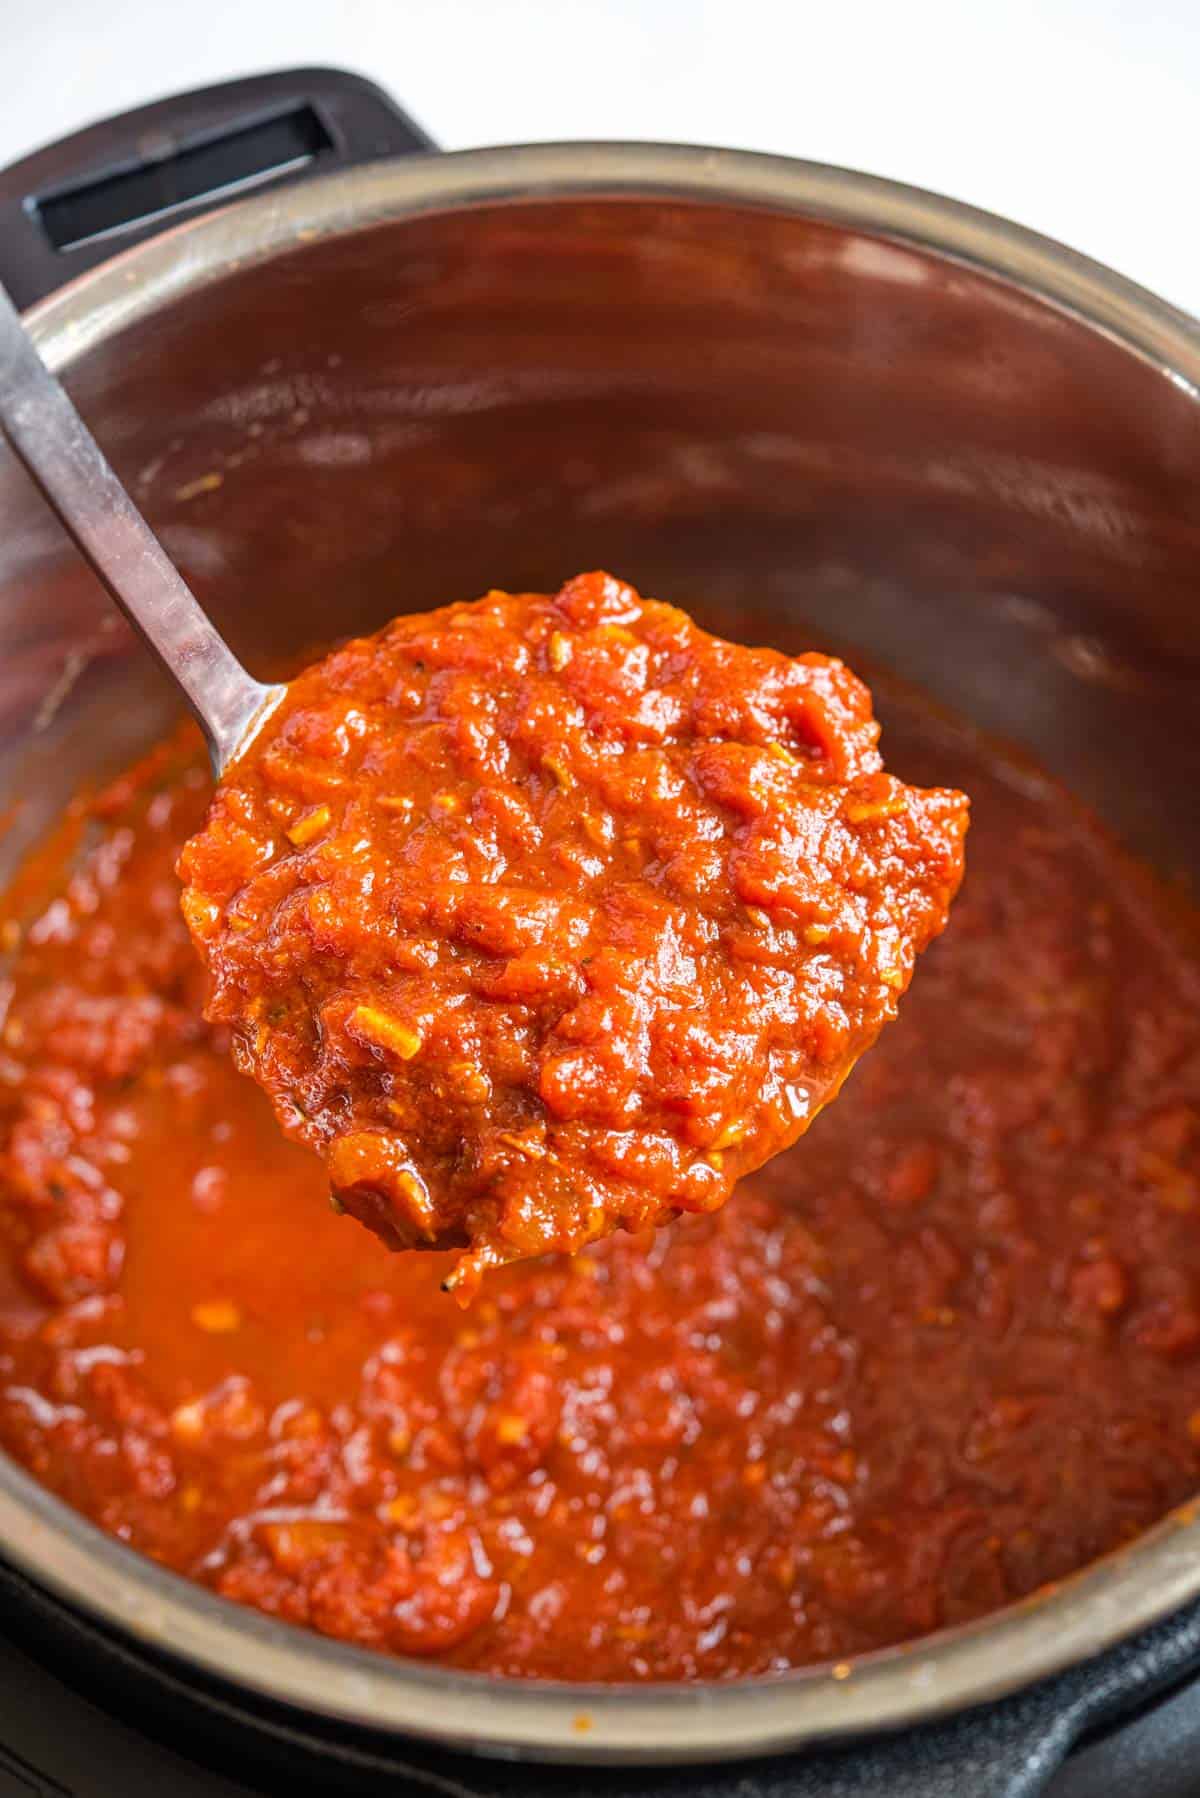 A close up of a ladle of spaghetti sauce